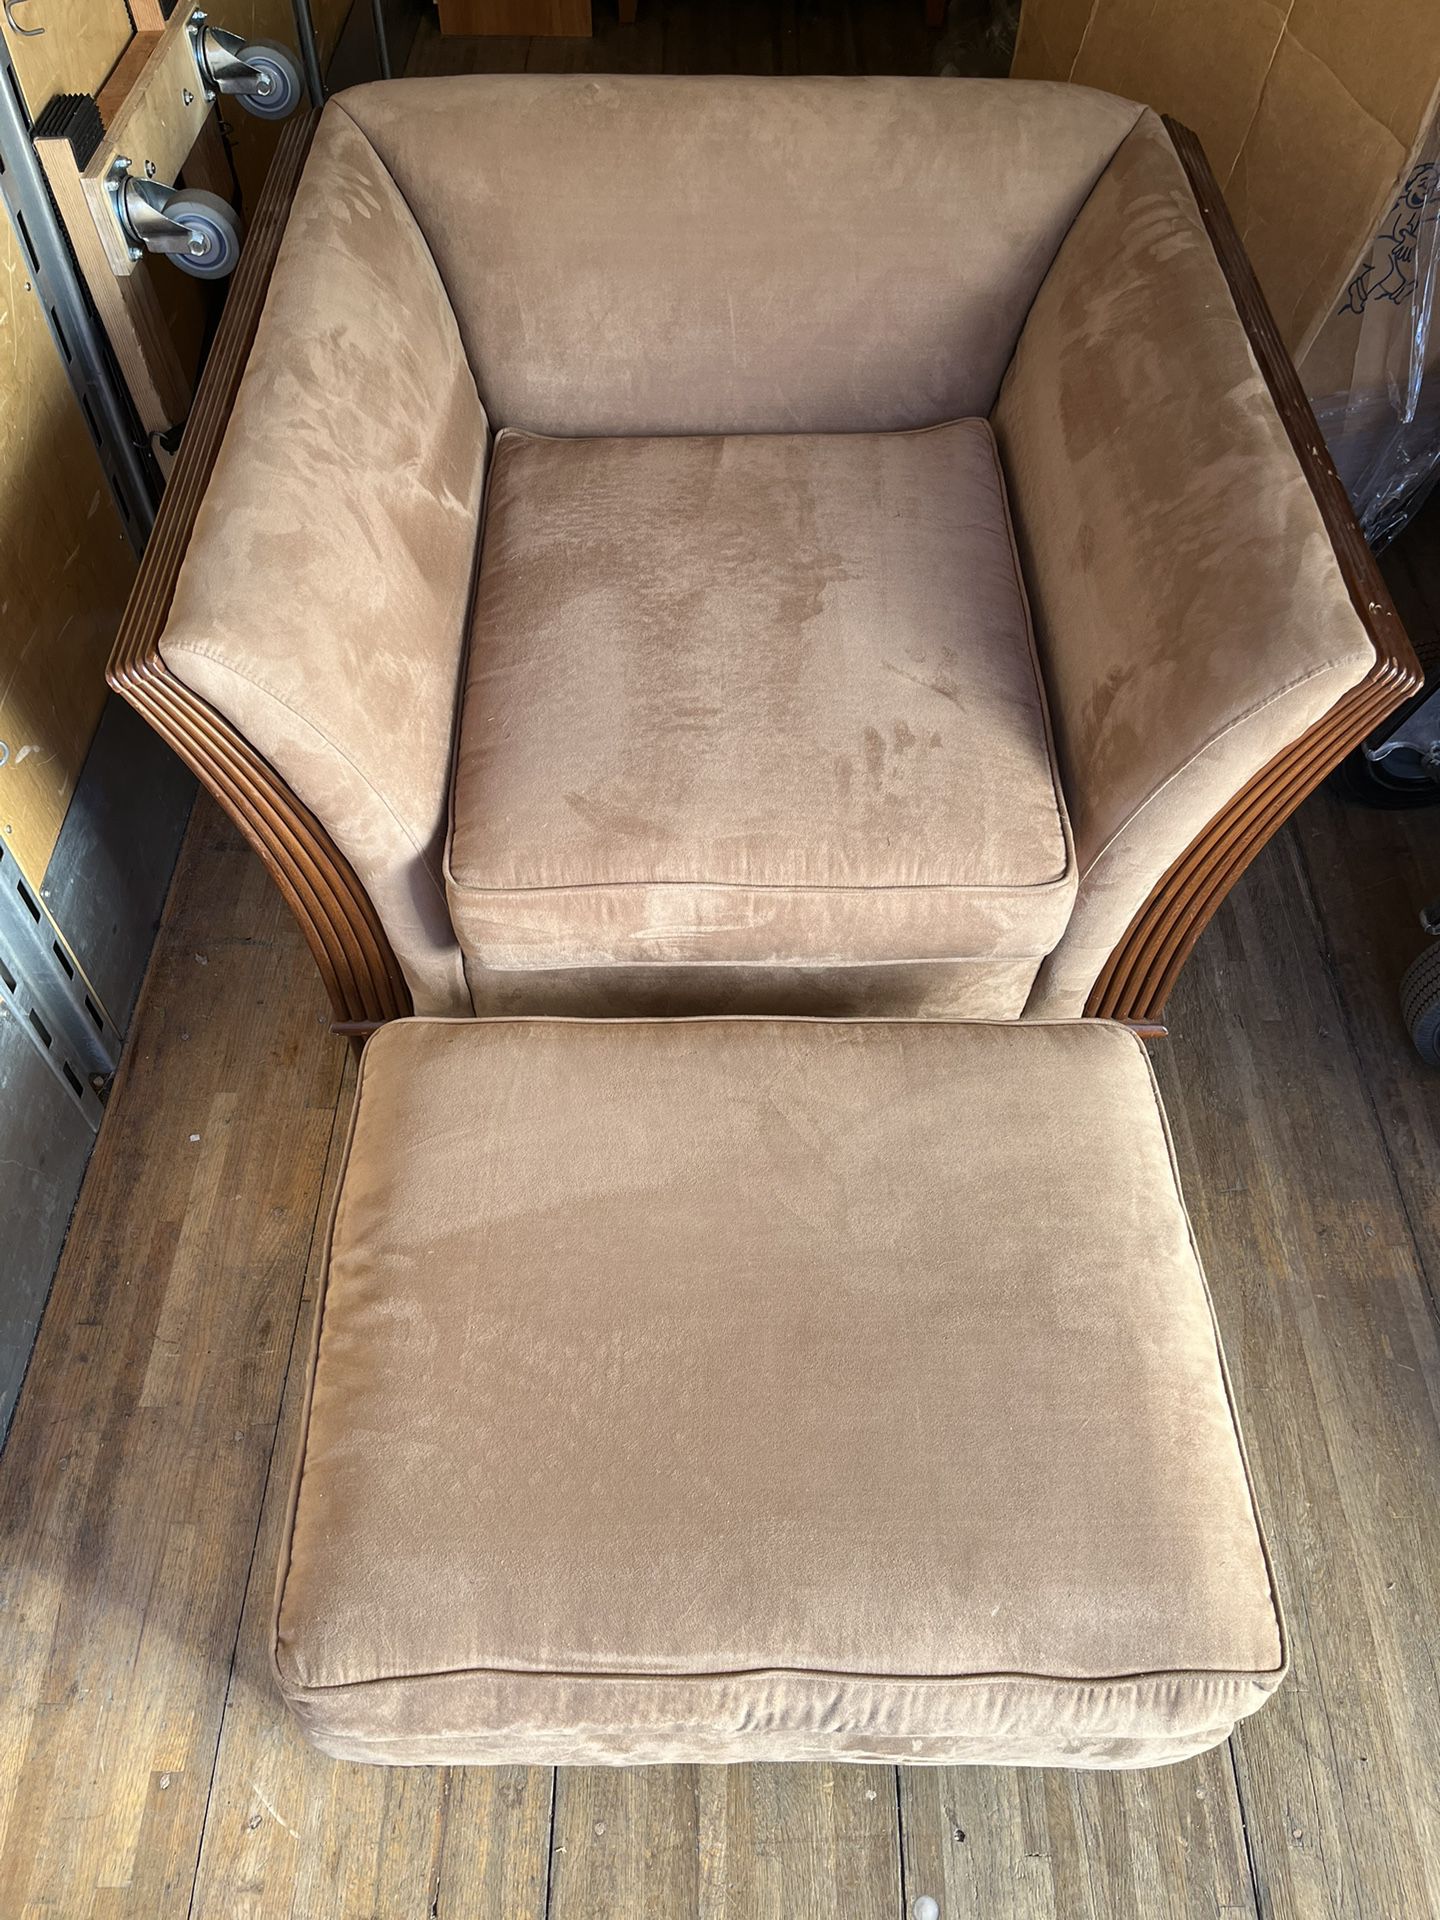 Chair W/ Ottoman 